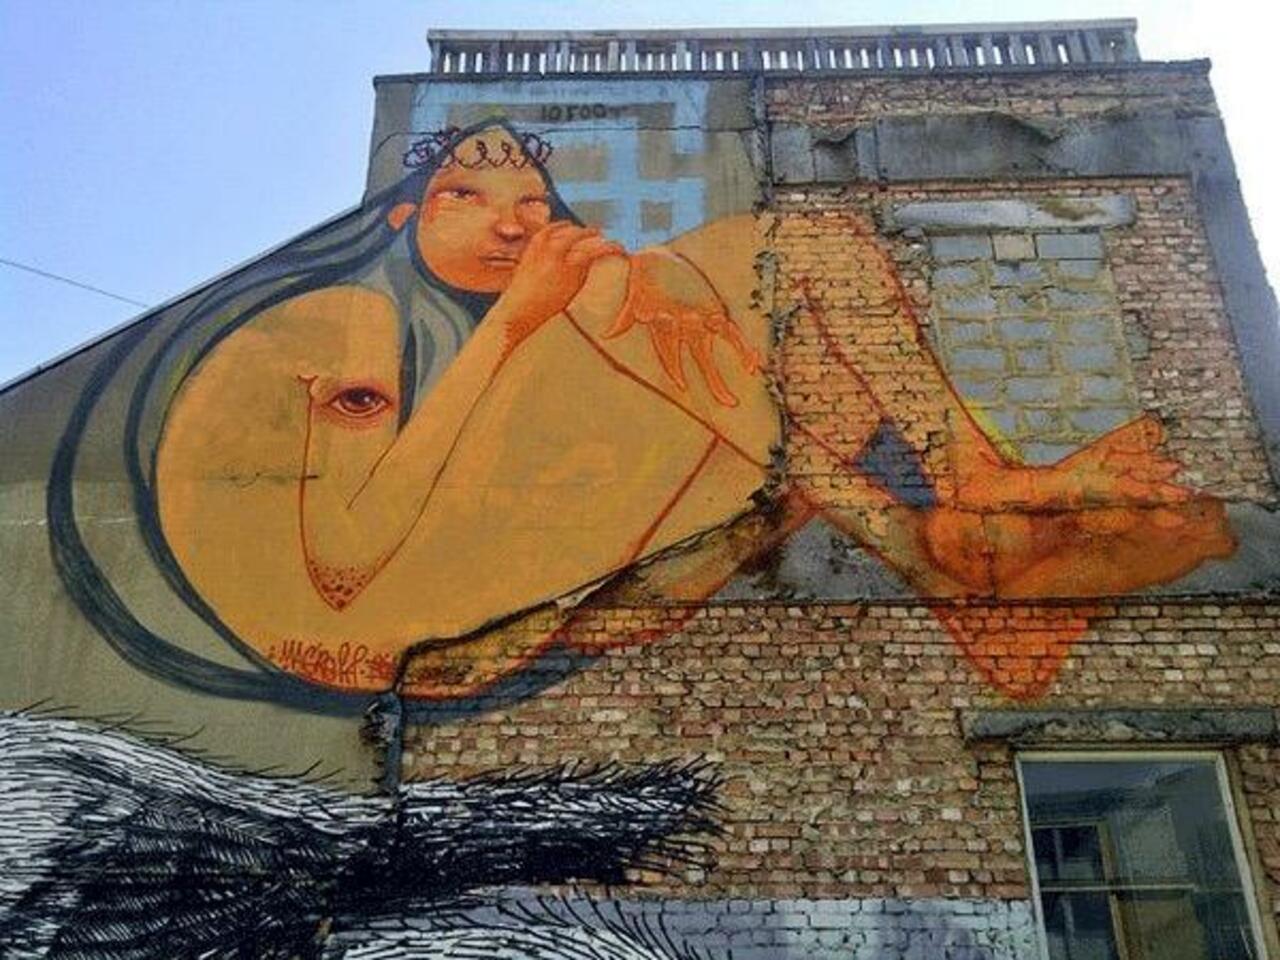 Brazilian artist Mag Magrela 
London
#streeart #art #mural #Graffiti http://t.co/30f7JrxRaV